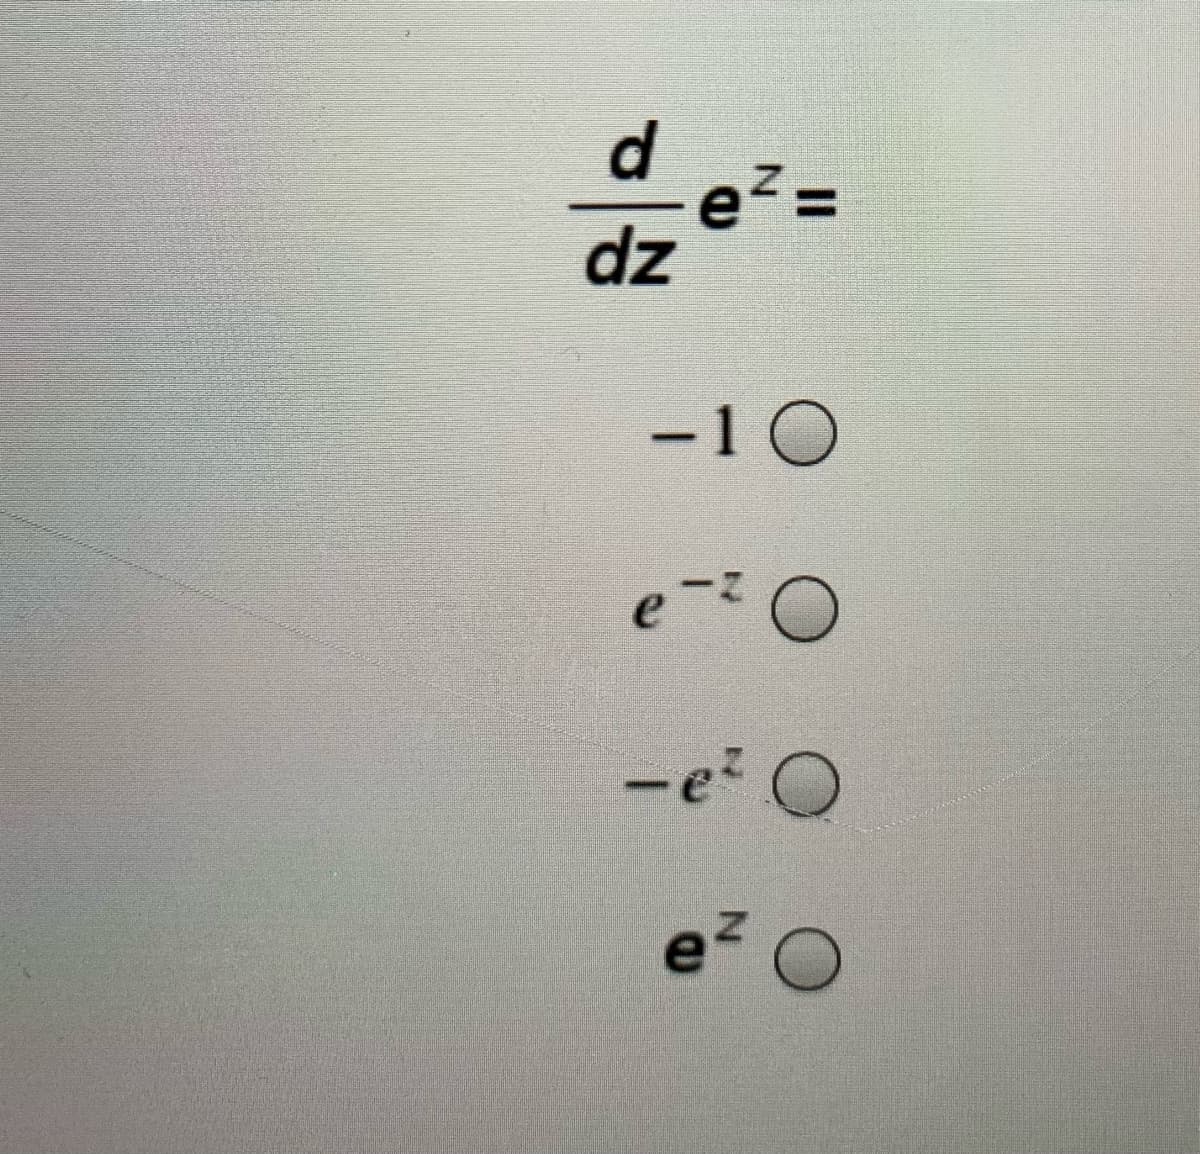 d.
e² =
dz
%3D
-10
e
-e O
e2 O
